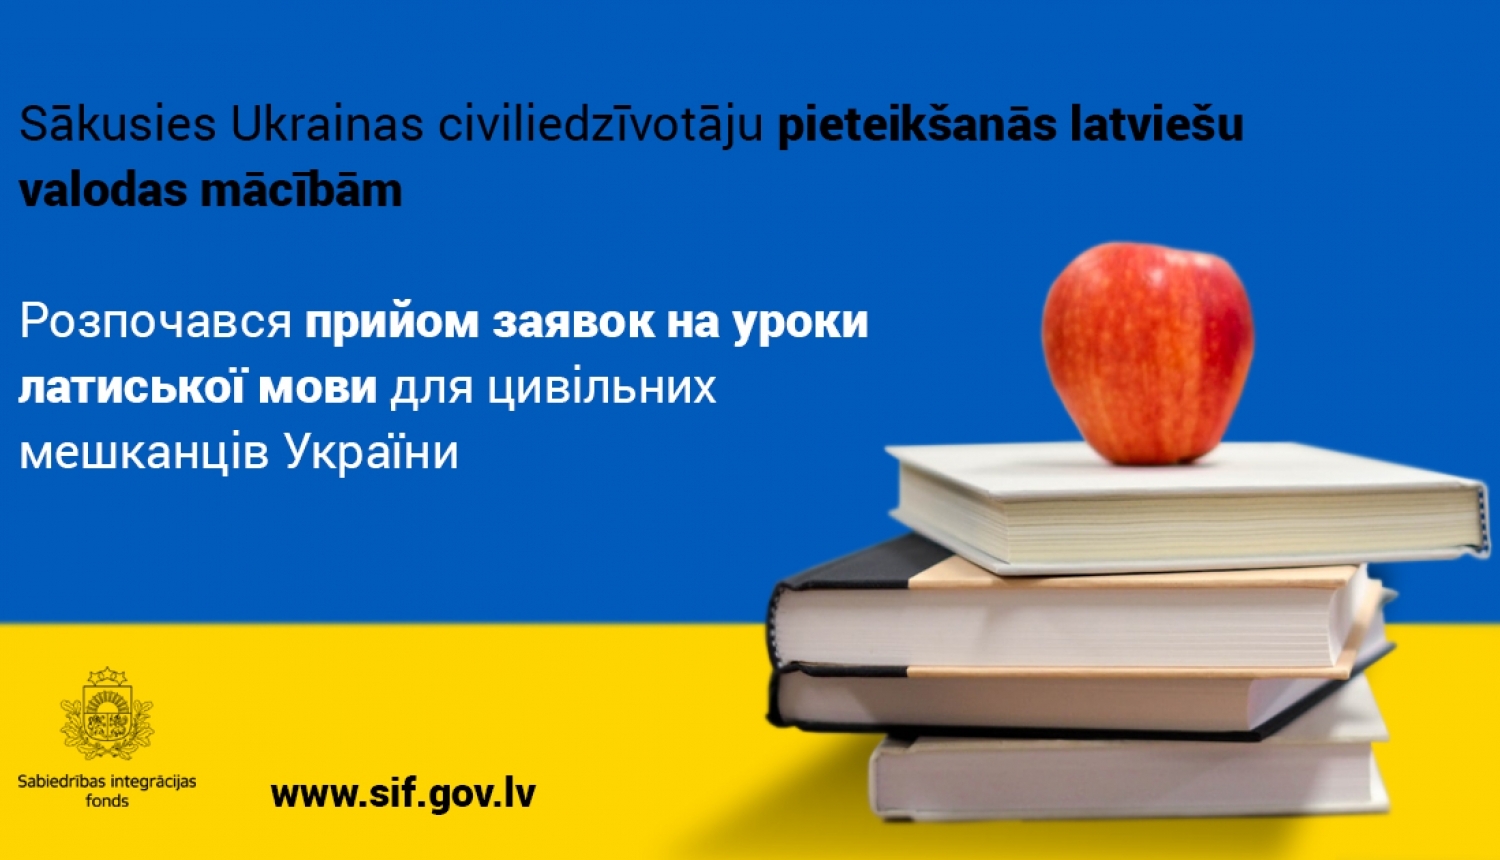 Ukrainas civiliedzīvotājiem Latvijā pieejami bezmaksas latviešu valodas kursi